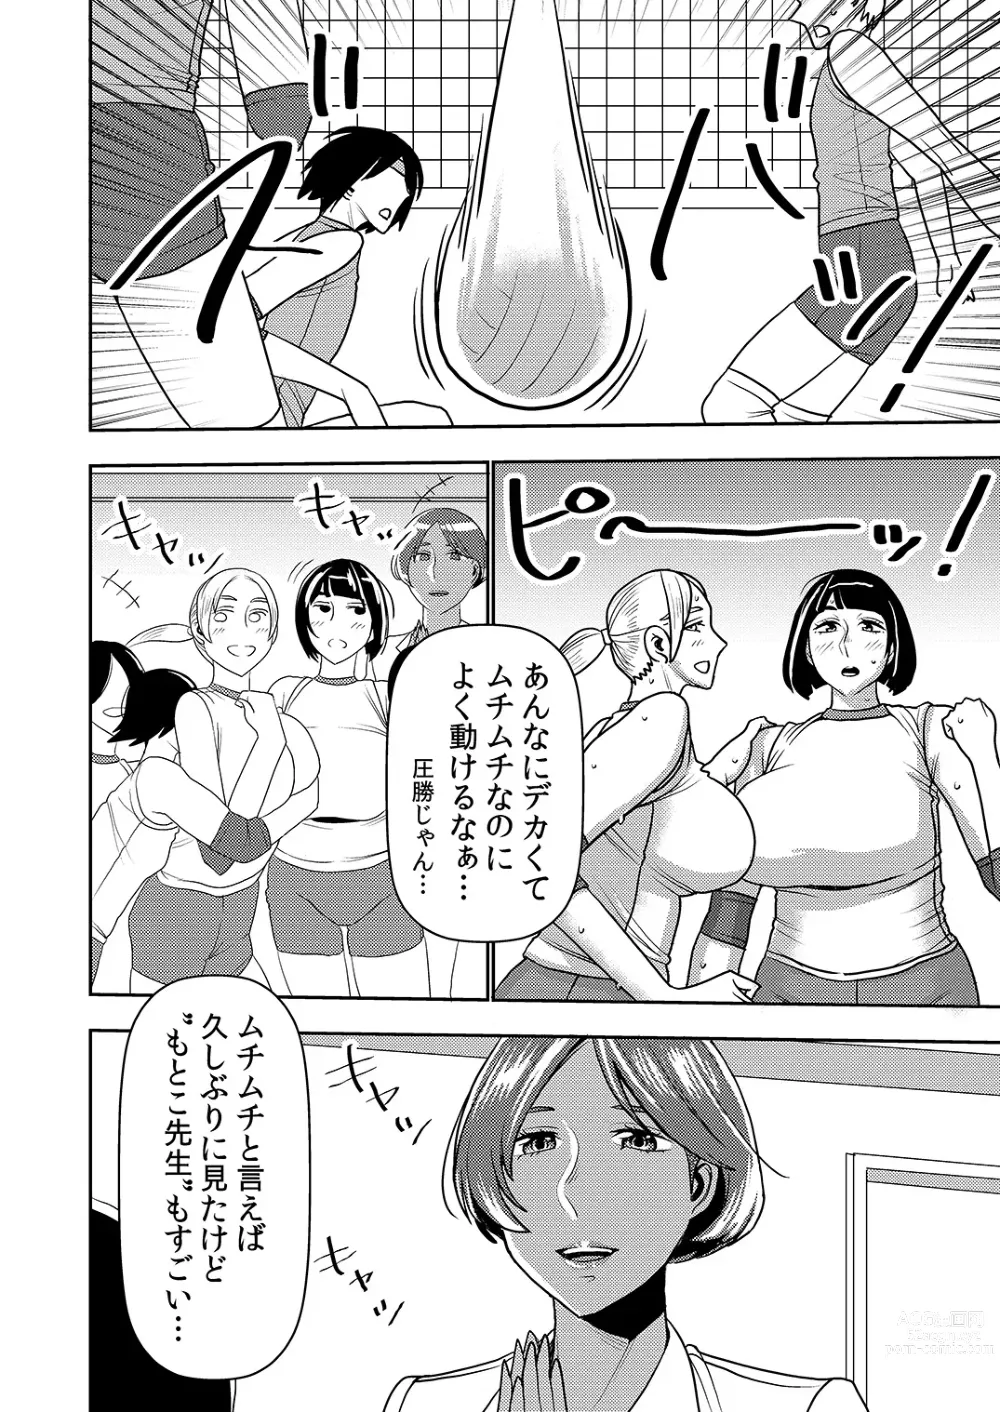 Page 3 of doujinshi Dekakute Eroi Boku no Imouto 5